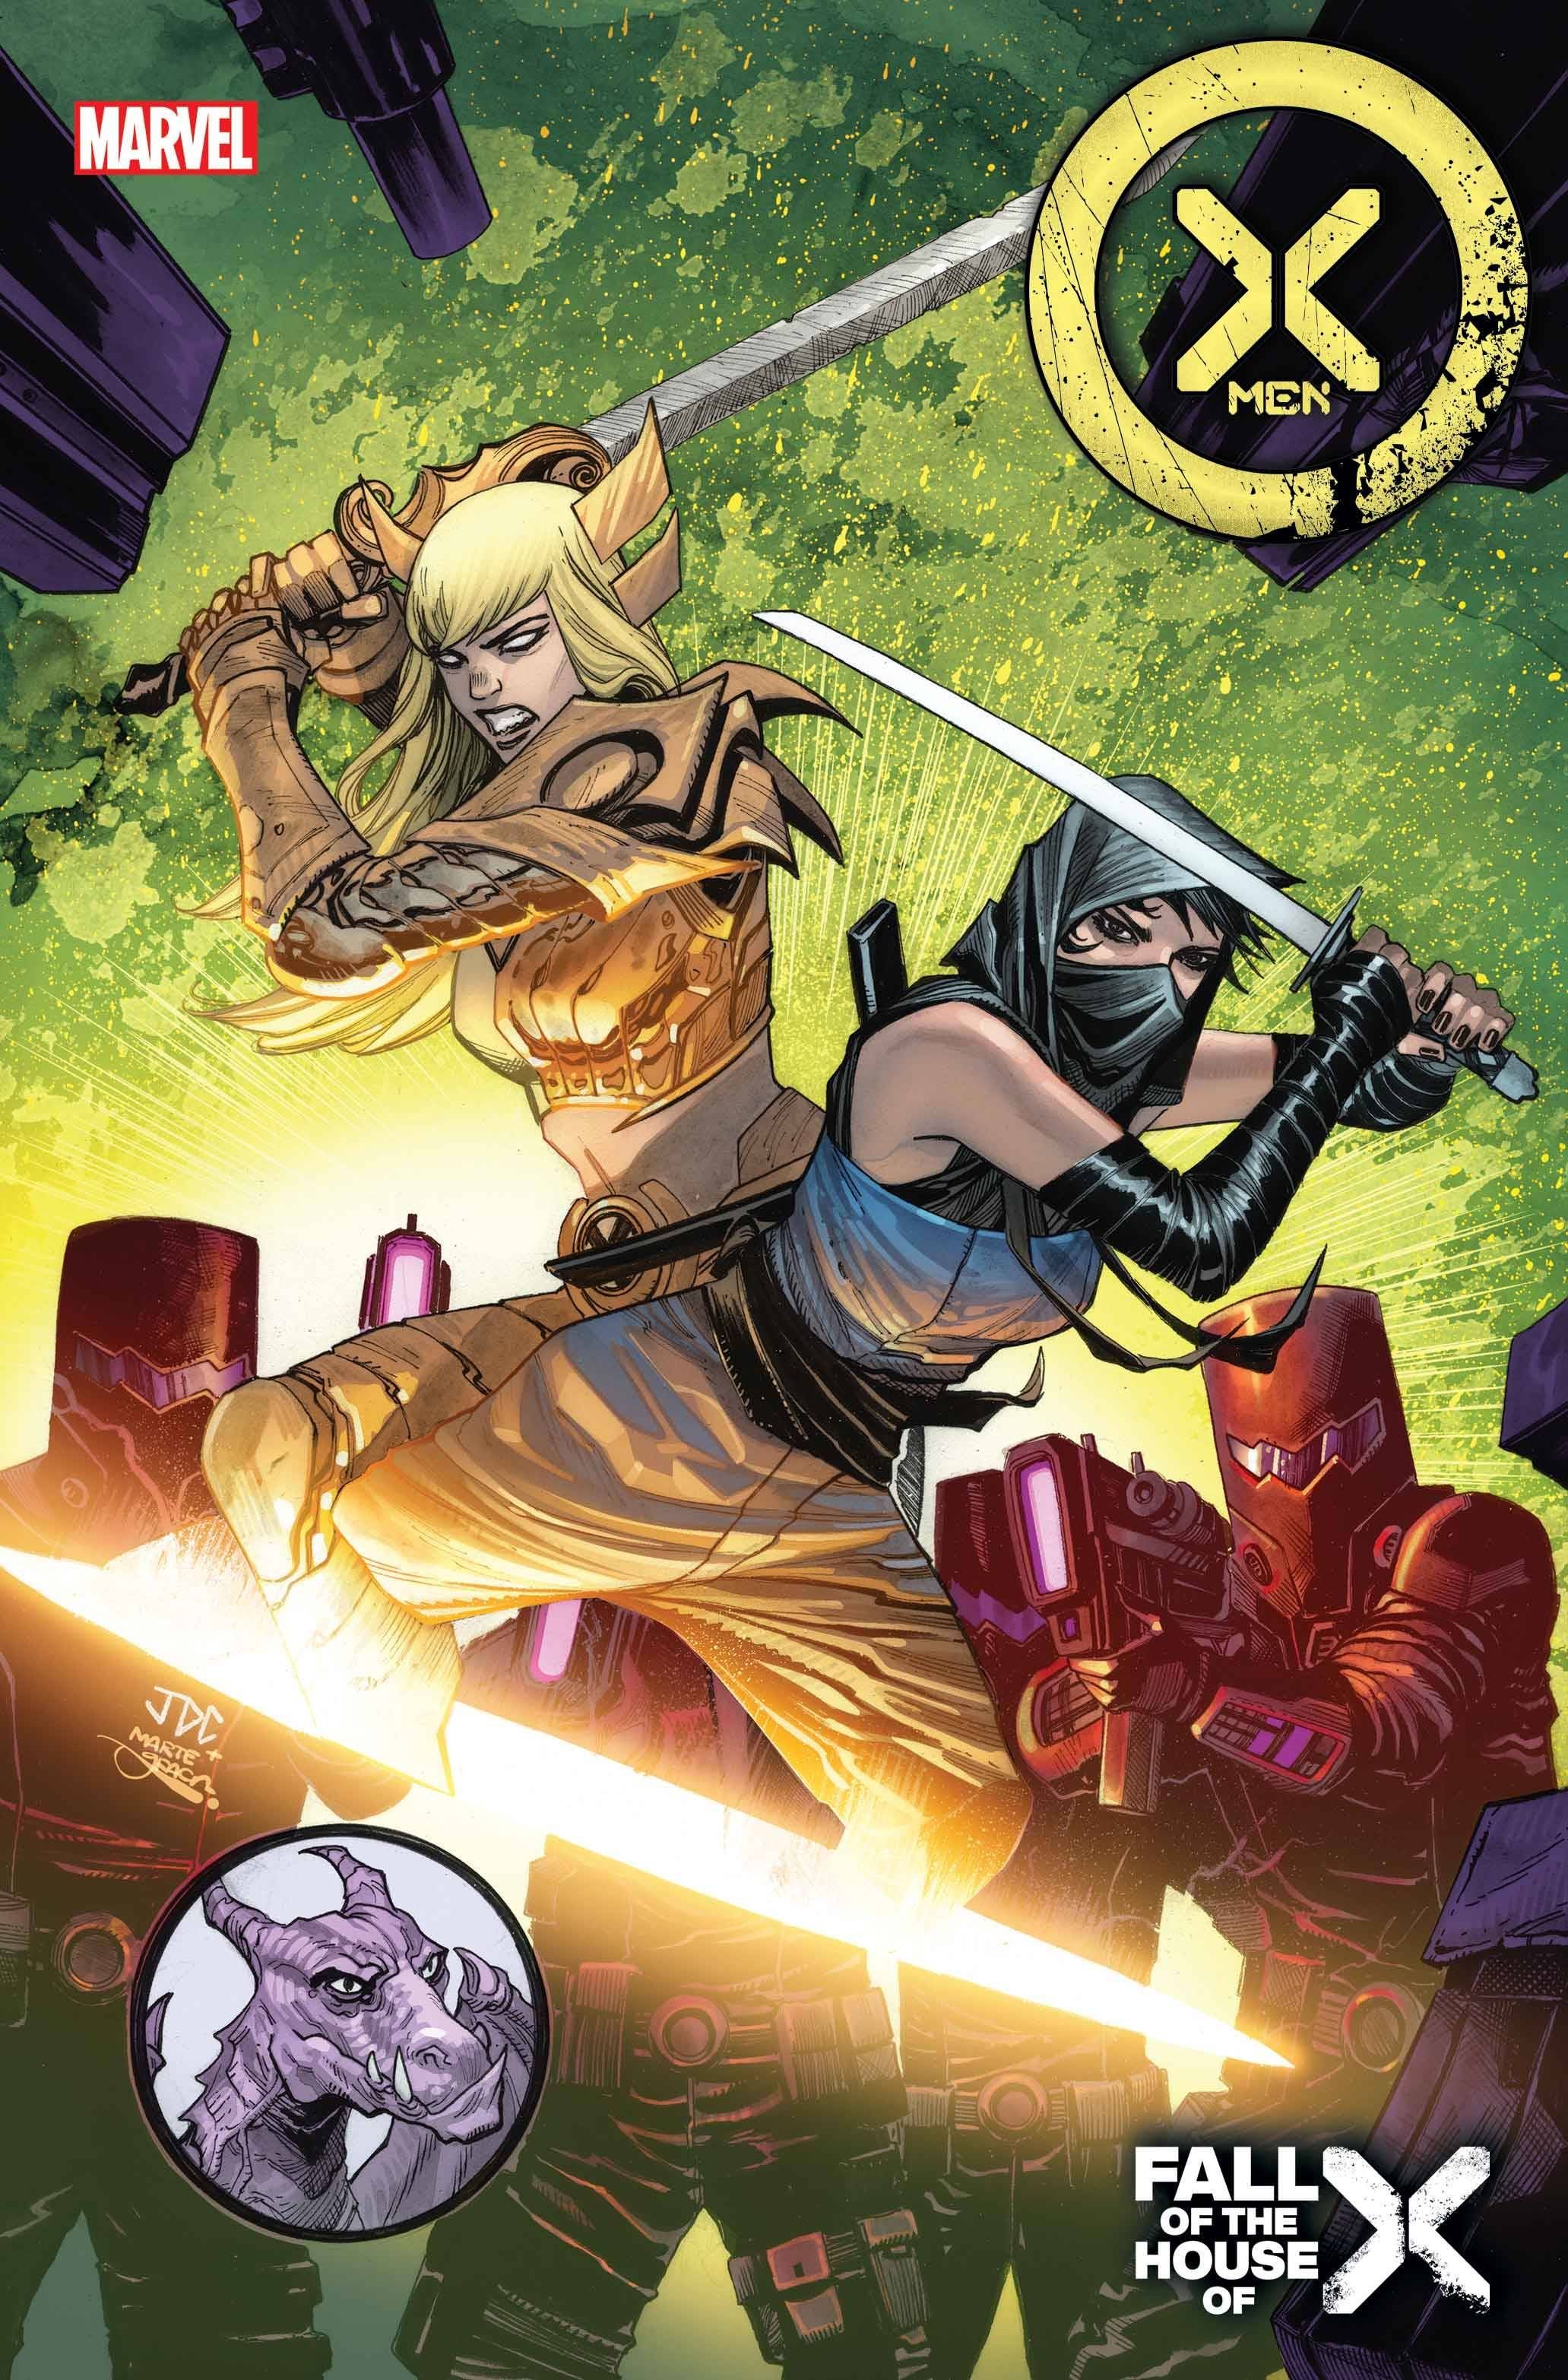 X-Men #32 Comic